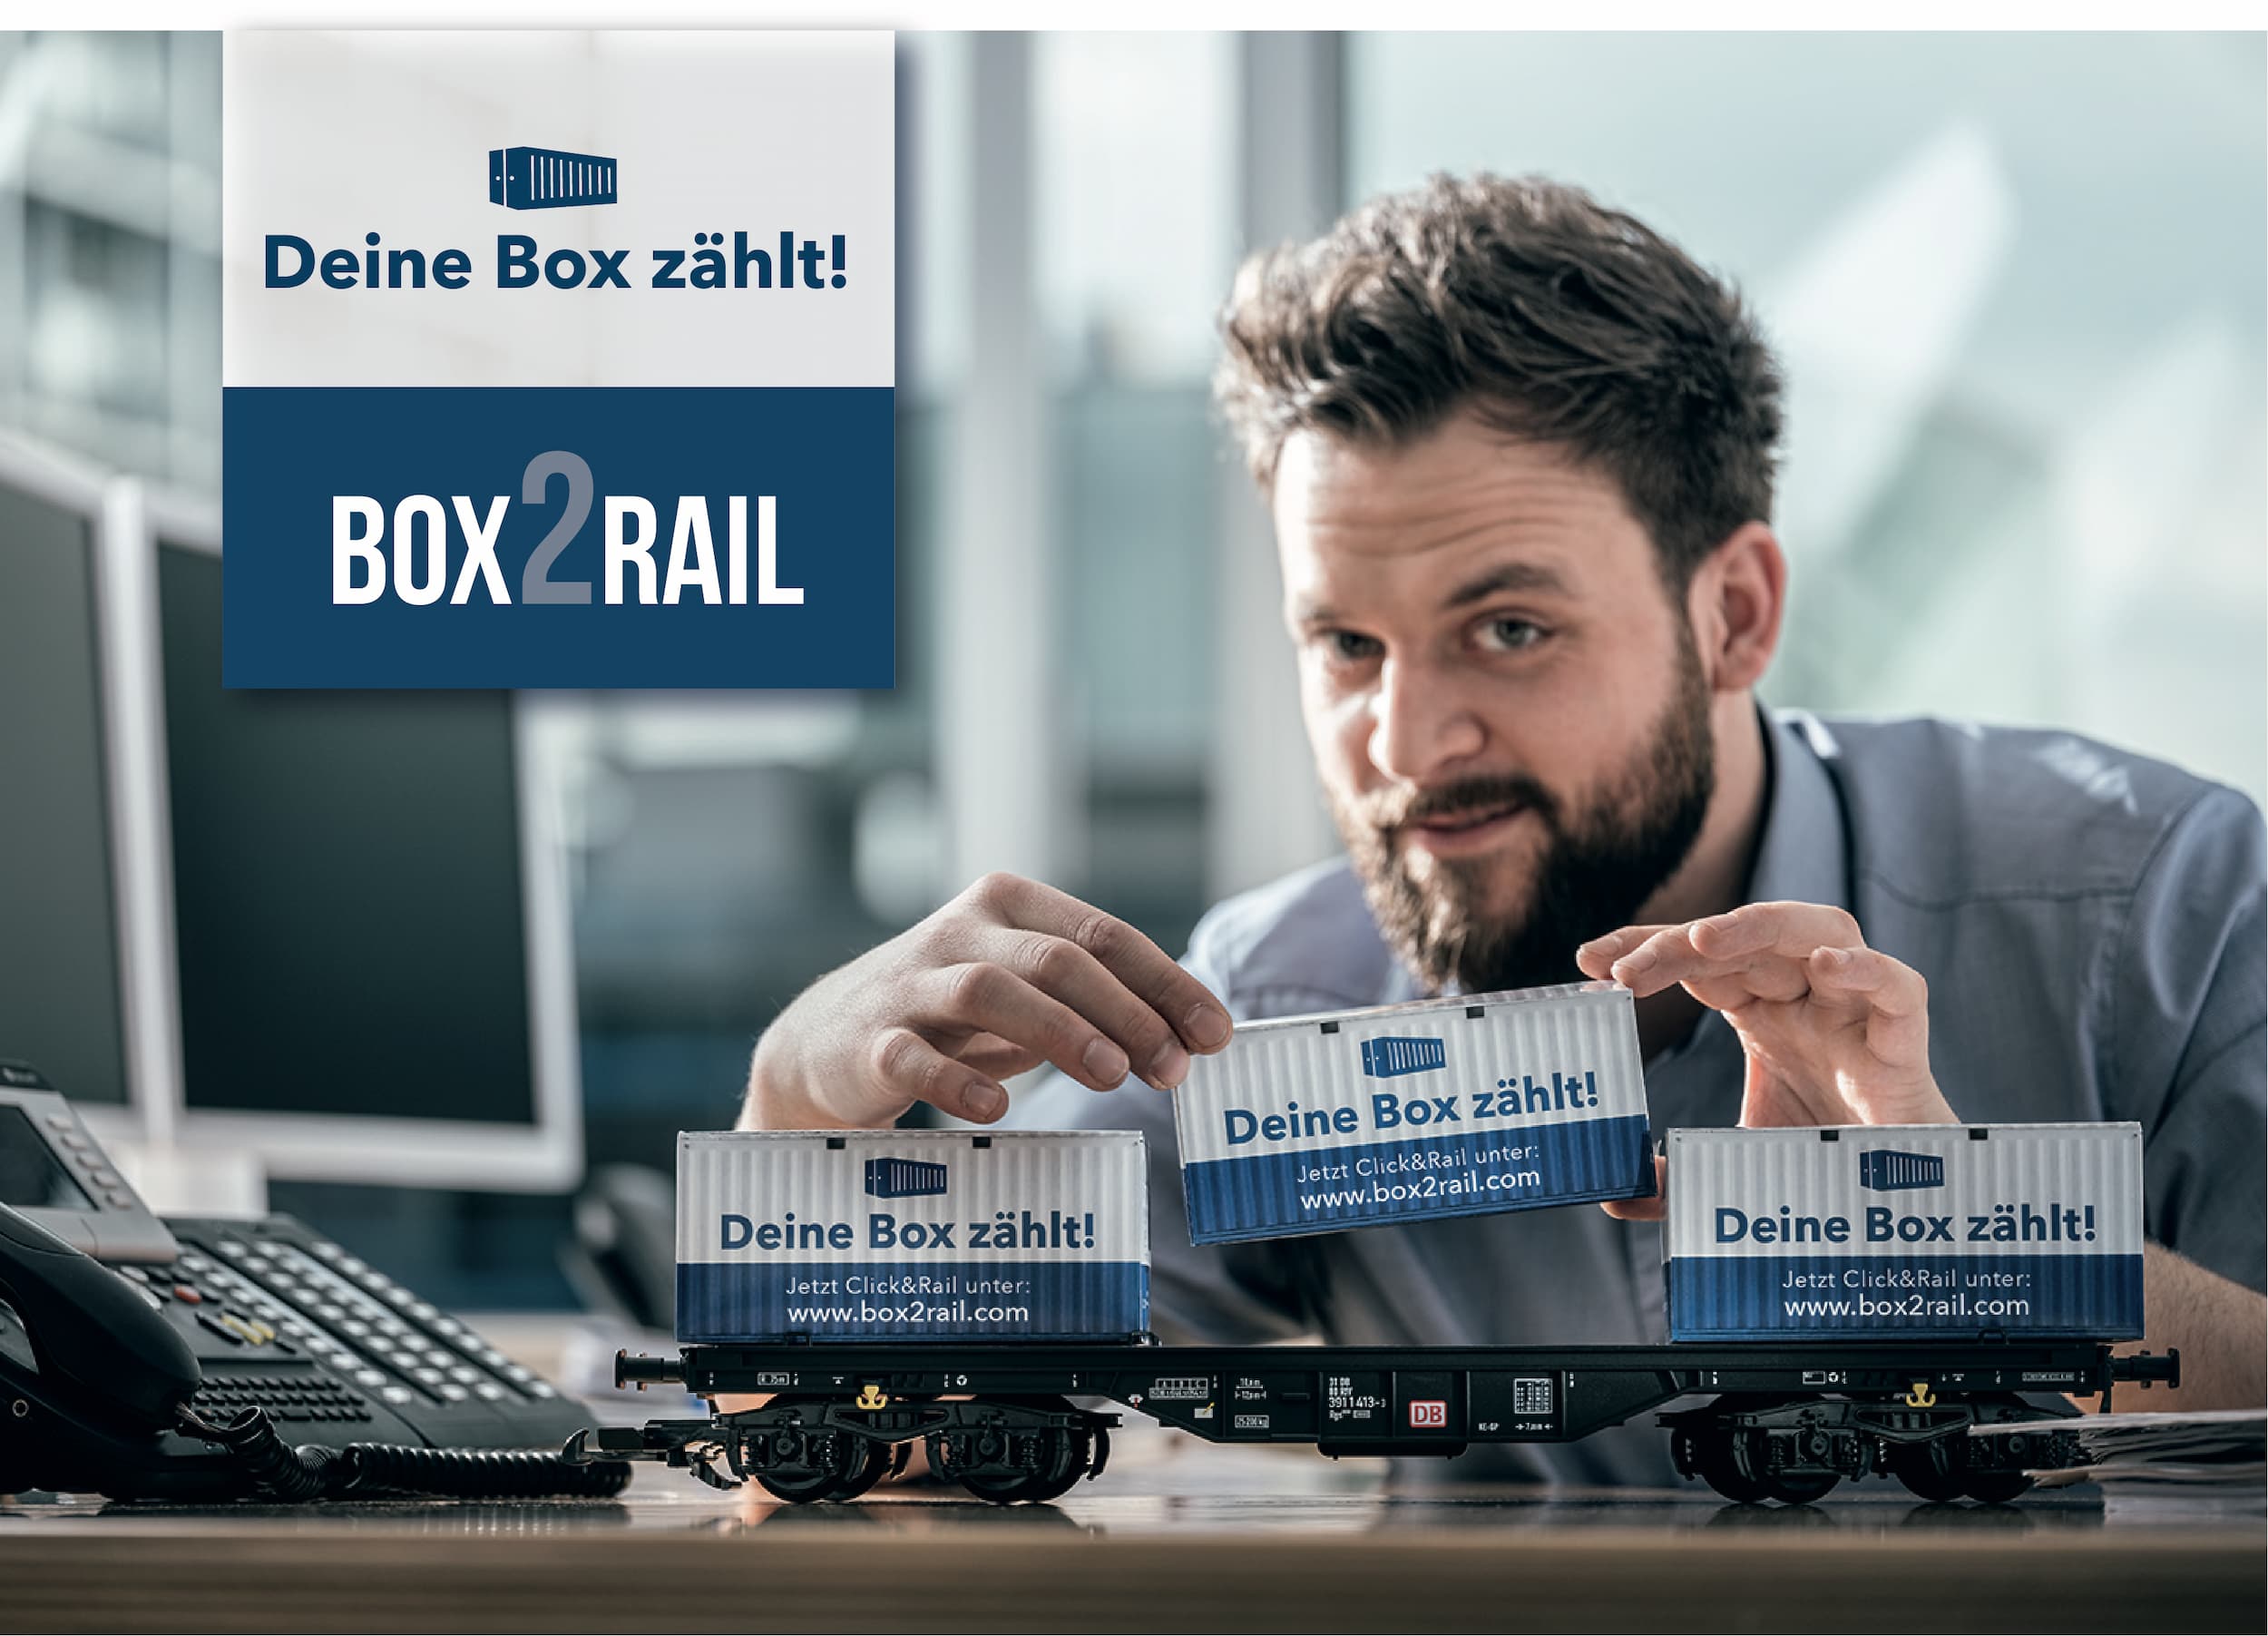 box2rail – Deine Box zählt